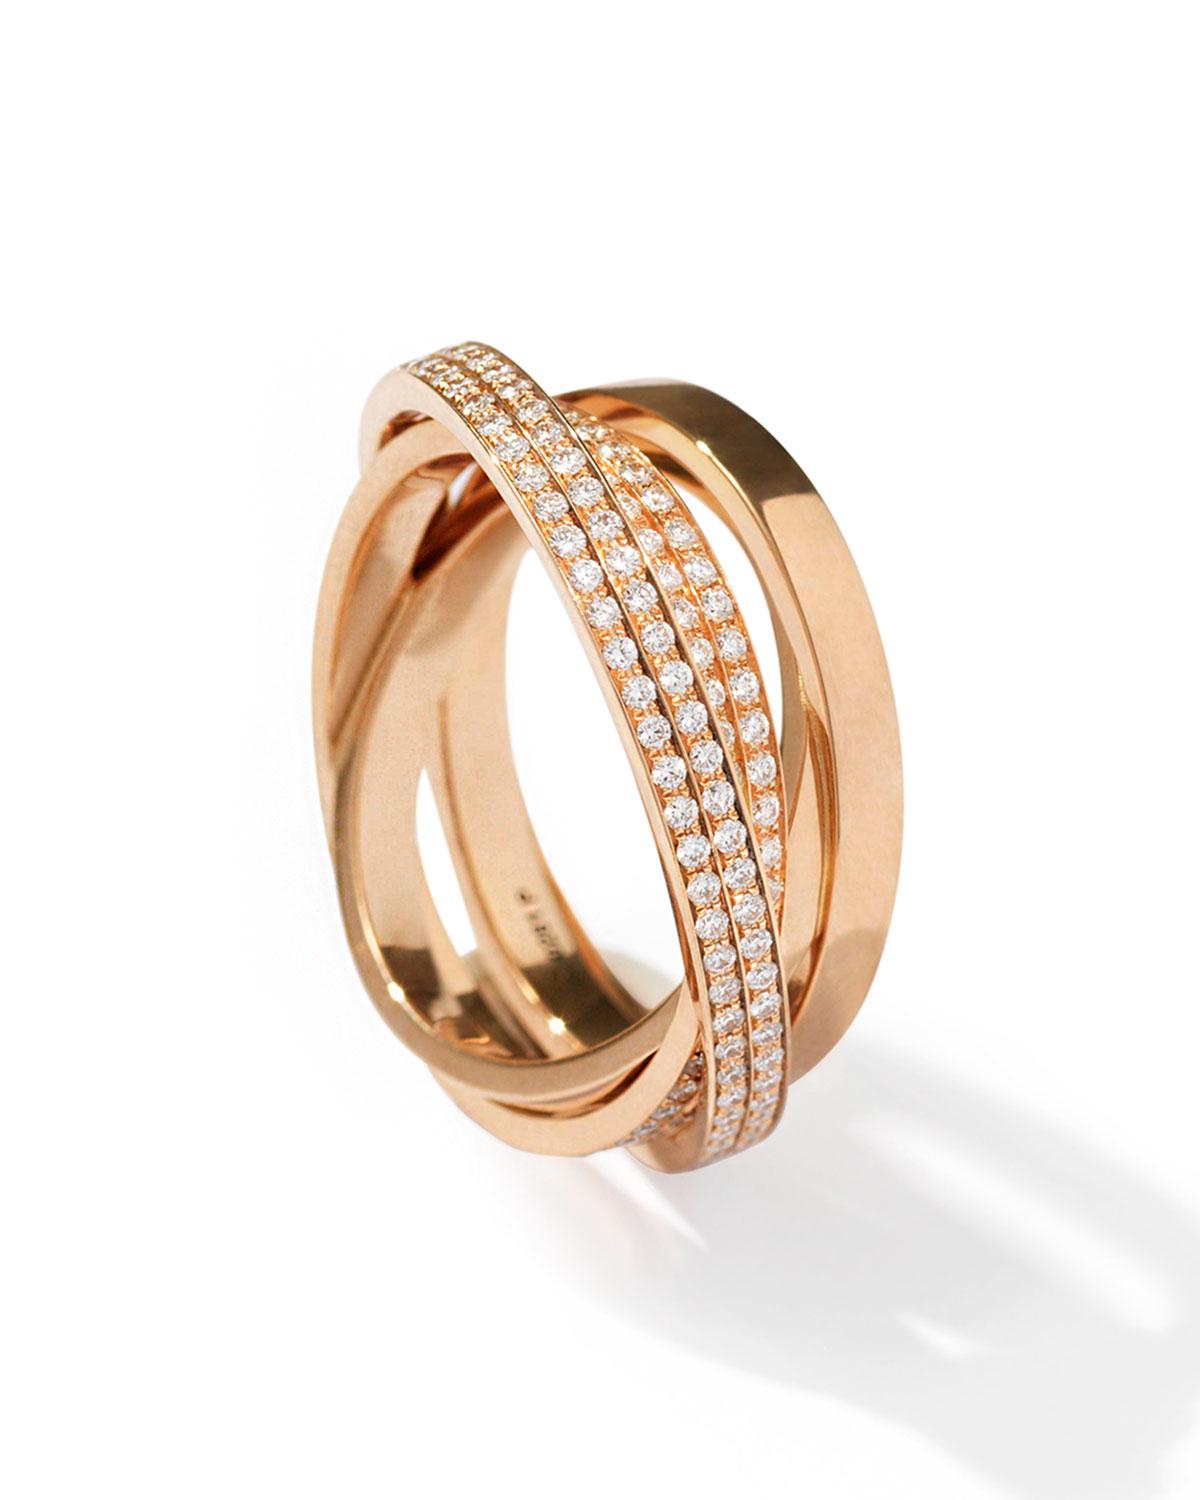 Lyst - Repossi Technical Berbère Diamond Ring In 18k Rose Gold in Metallic